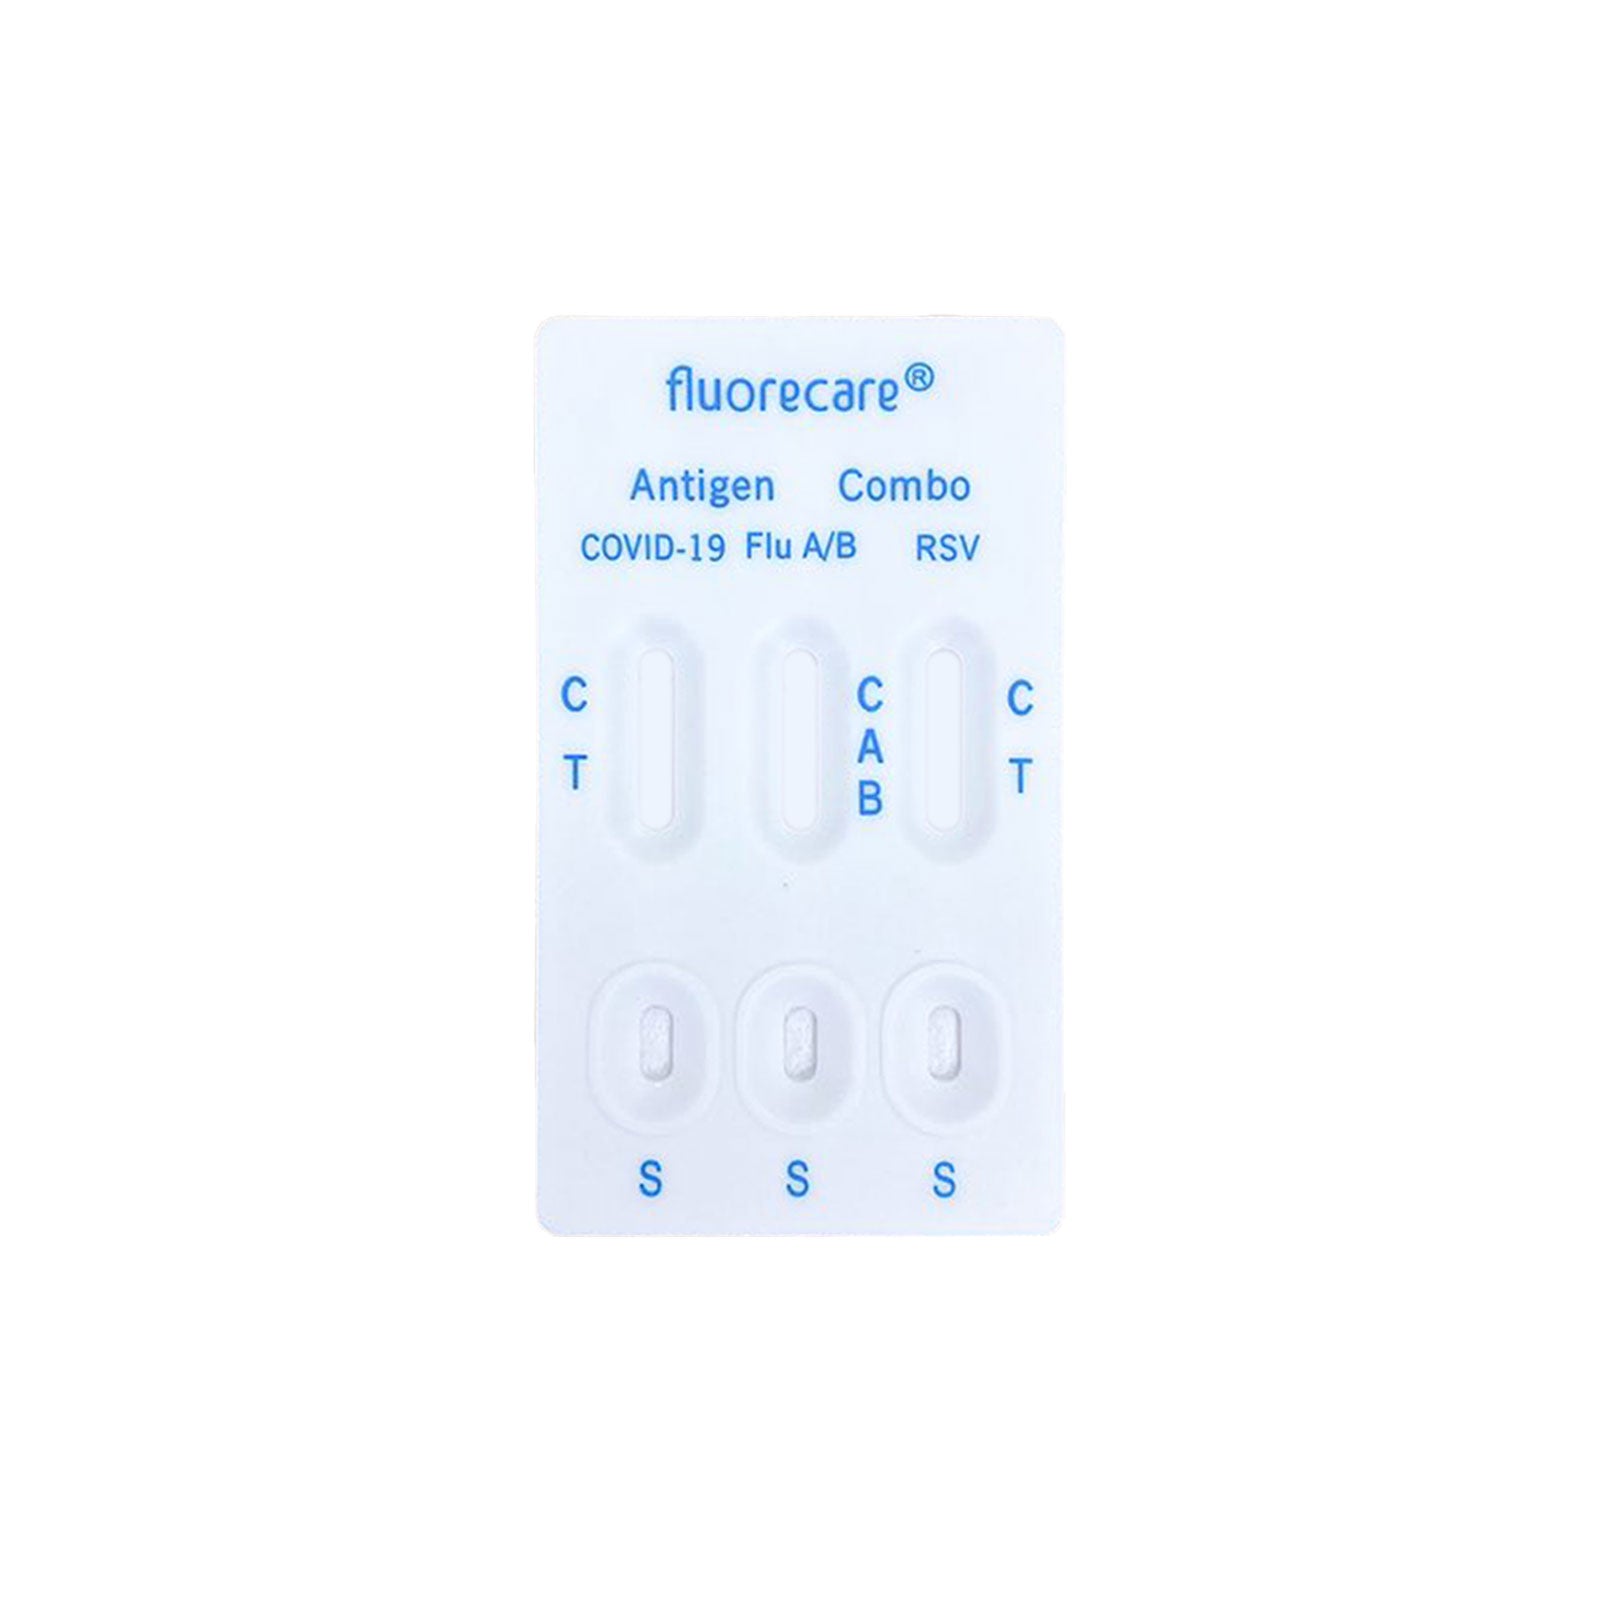 fluorecare® 4in1 SARS-CoV-2, Influenza A/B & RSV Combo-Schnelltest - langes MHD 01/26